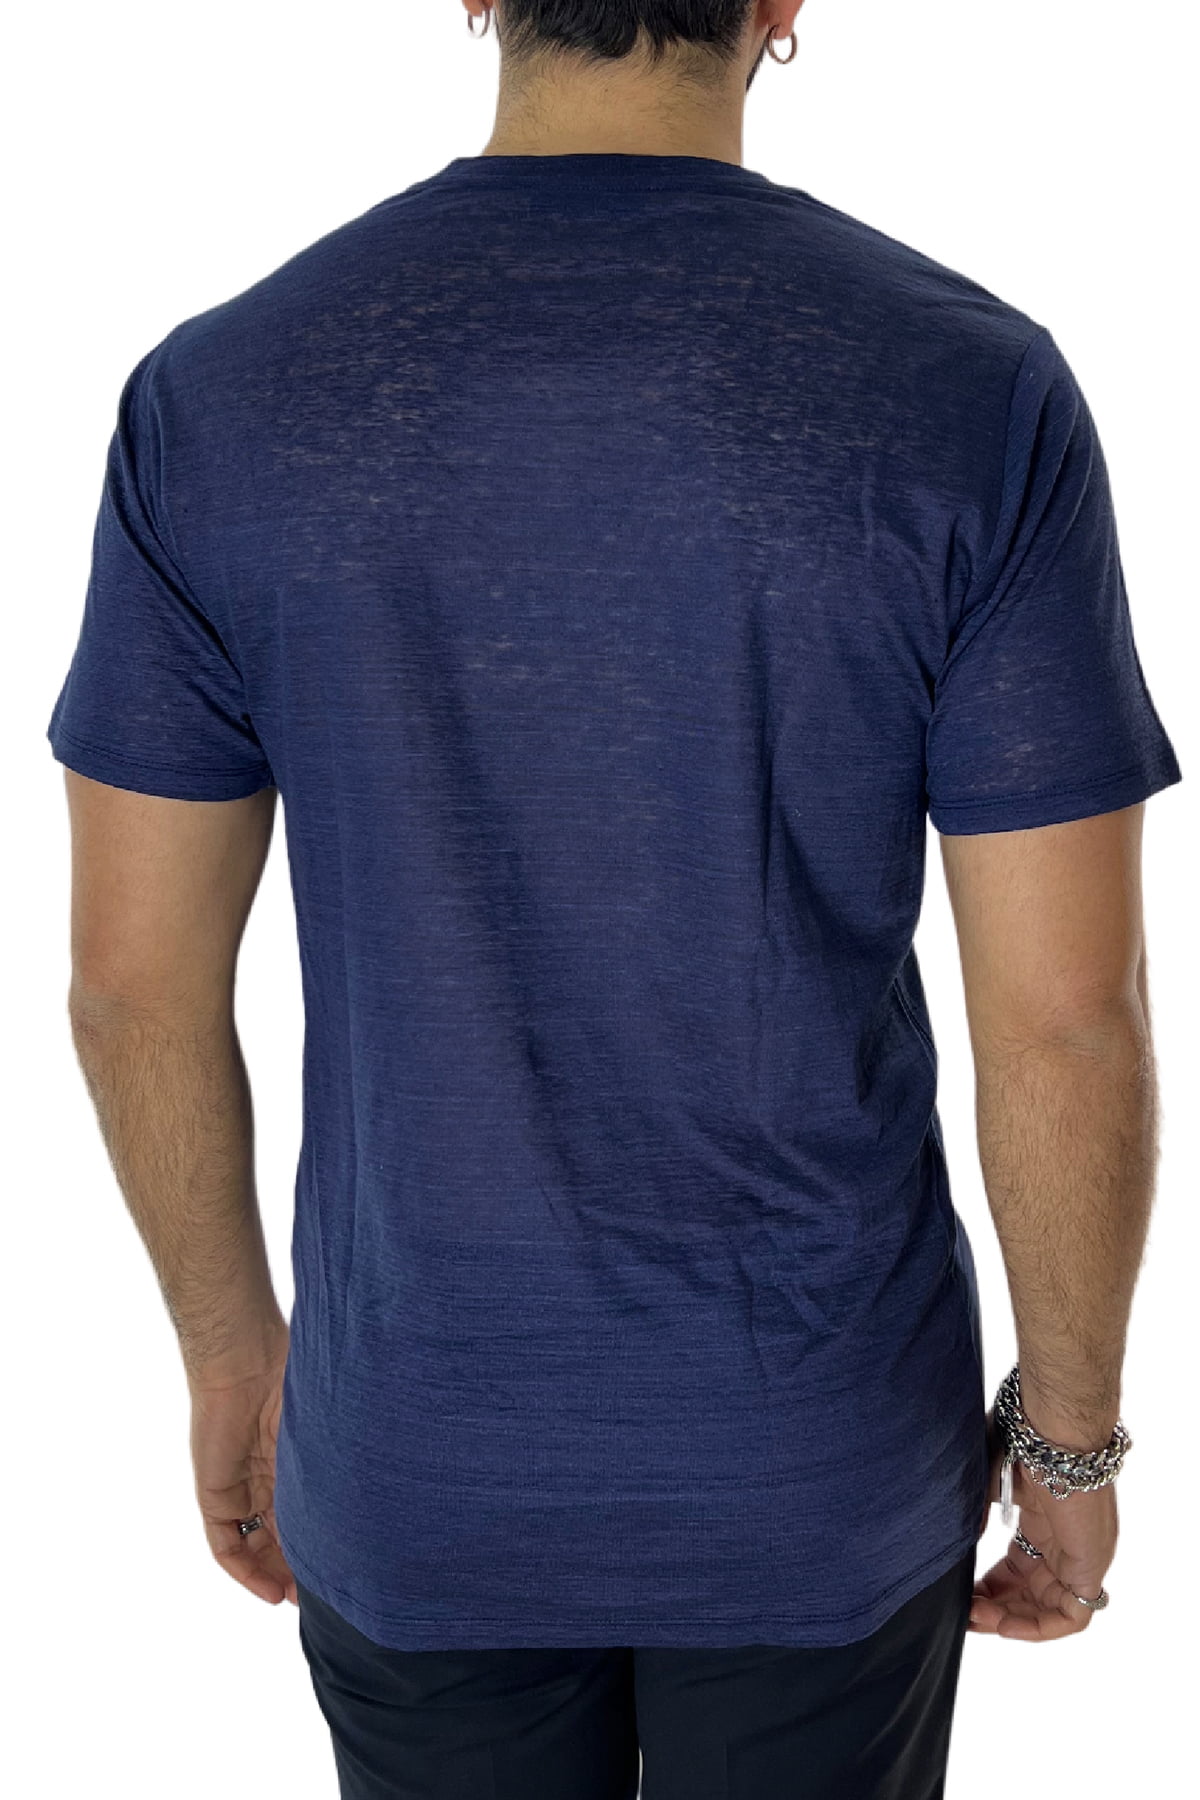 T-shirt girocollo da uomo blu fiammata mezze maniche slim fit made in italy